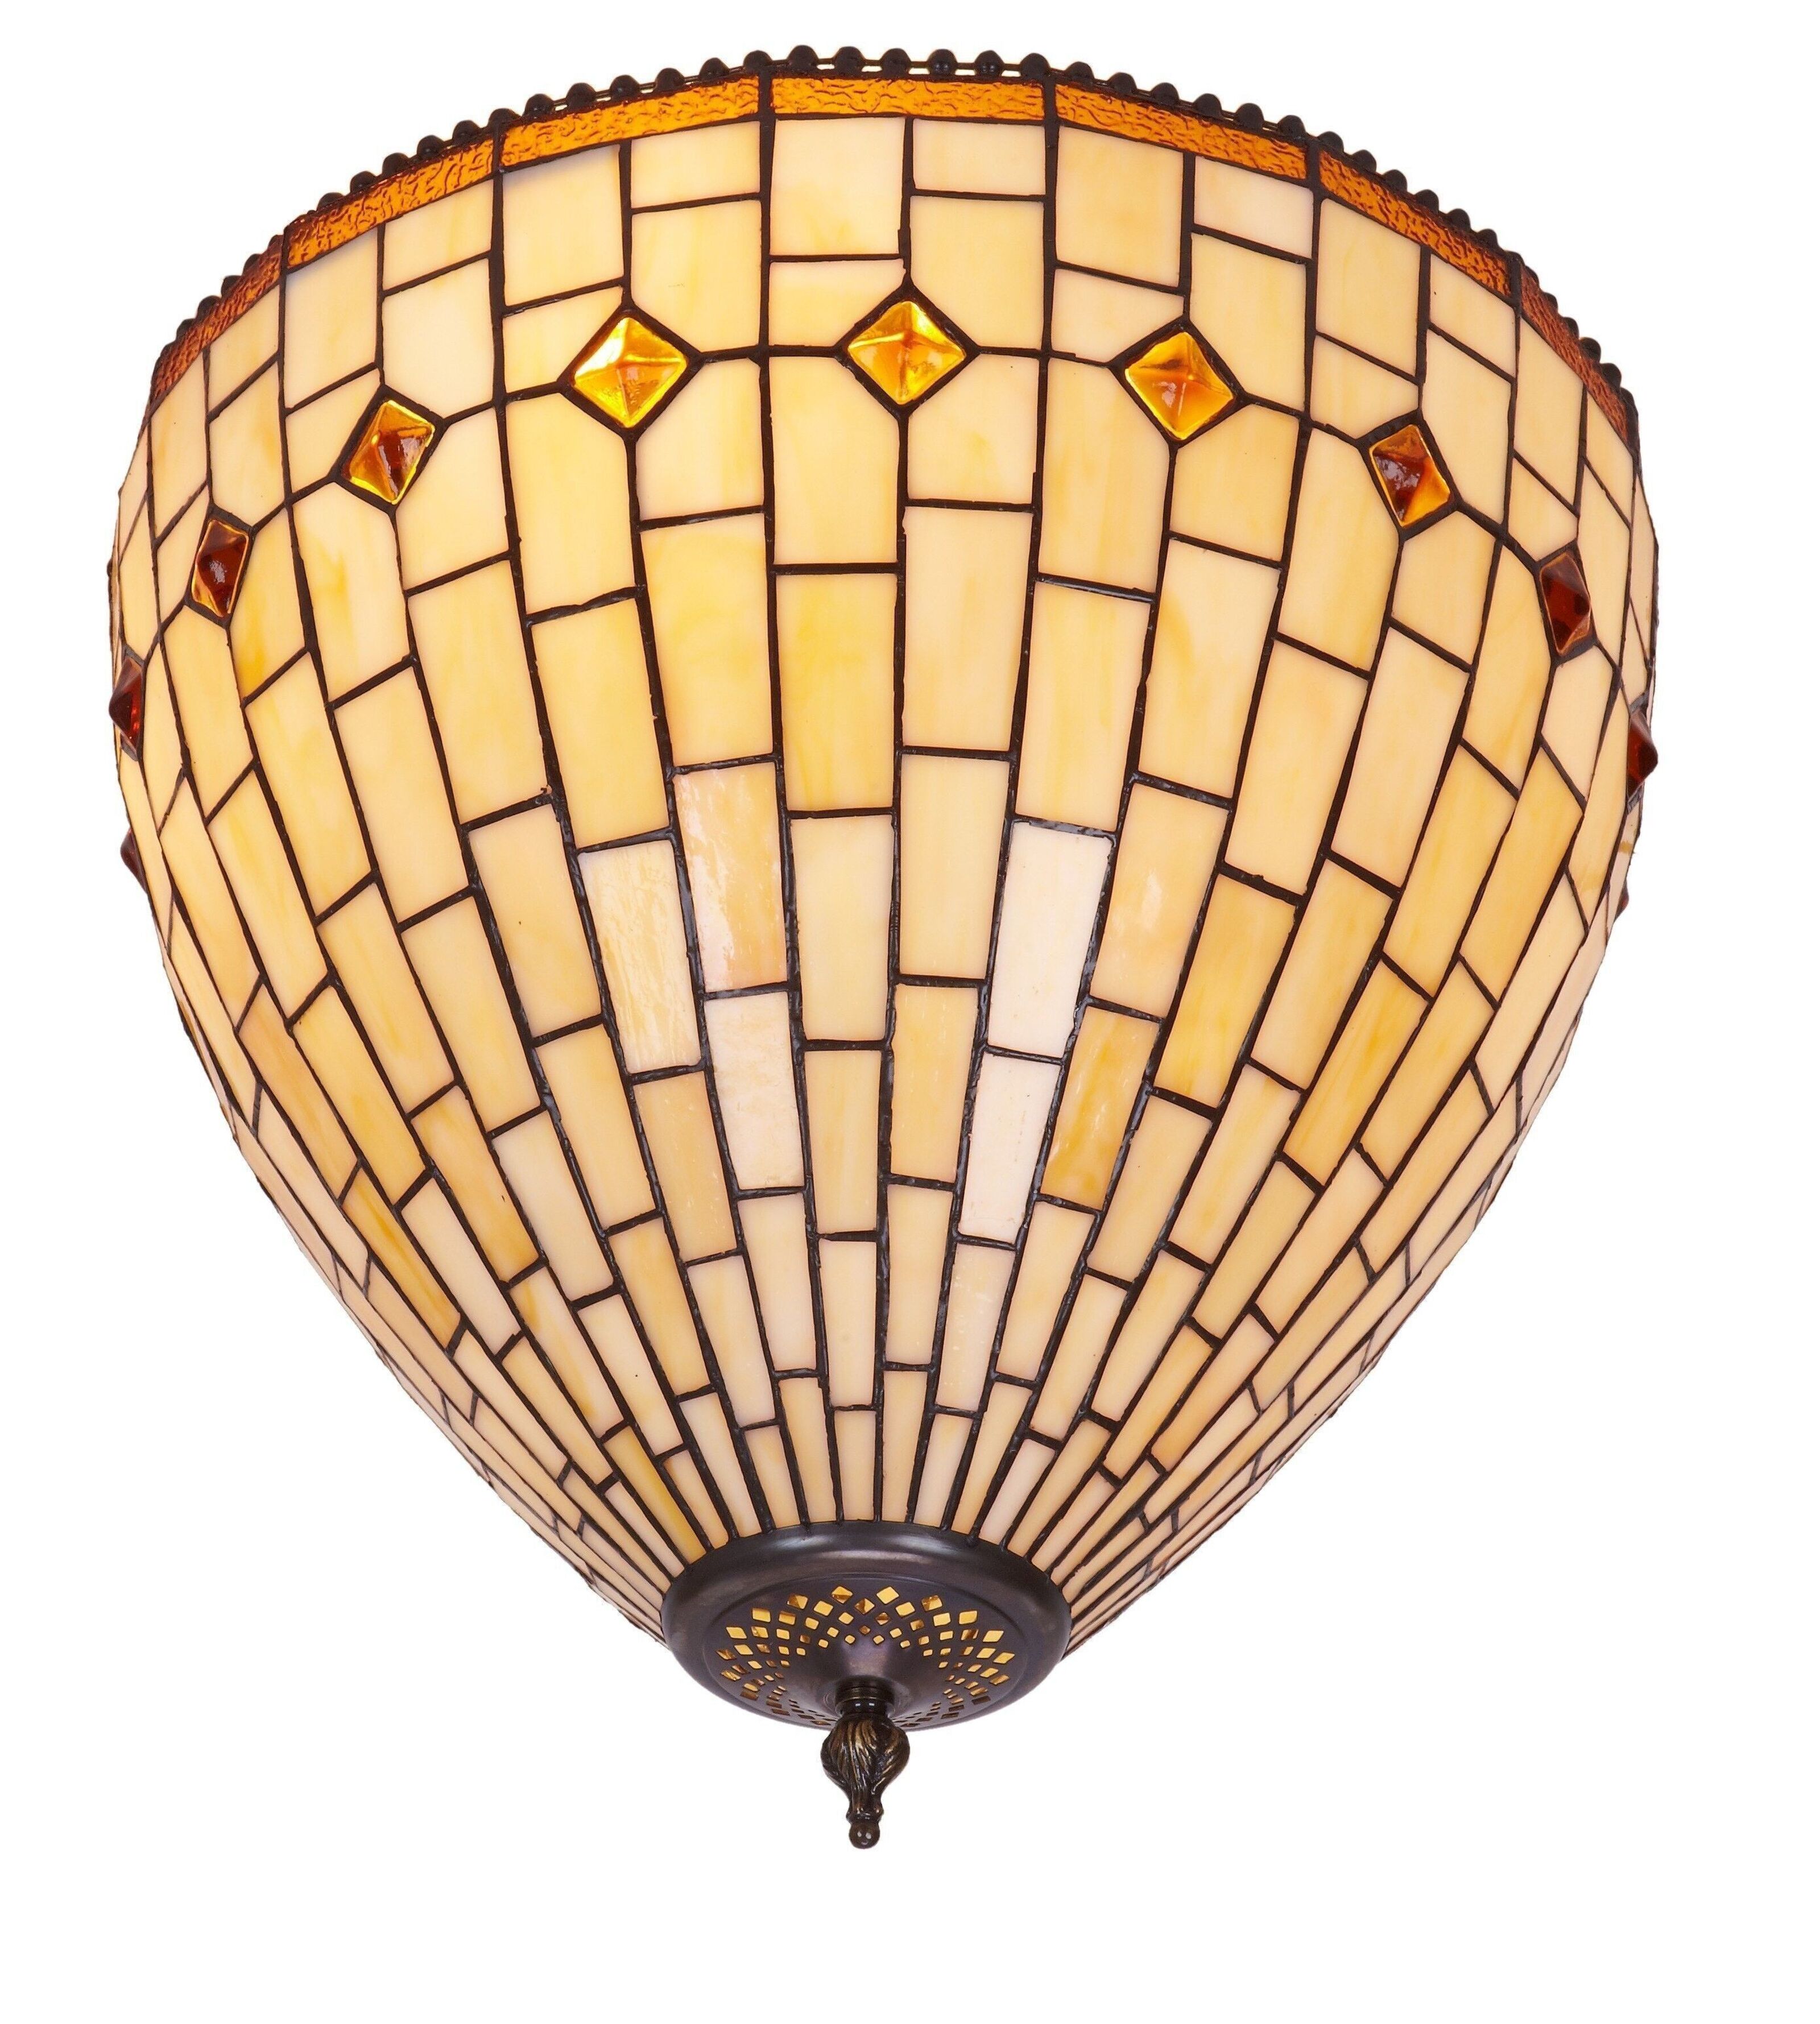 Buy wholesale screen 40cm Series lamp Art Ceiling LG244300 diameter Tiffany